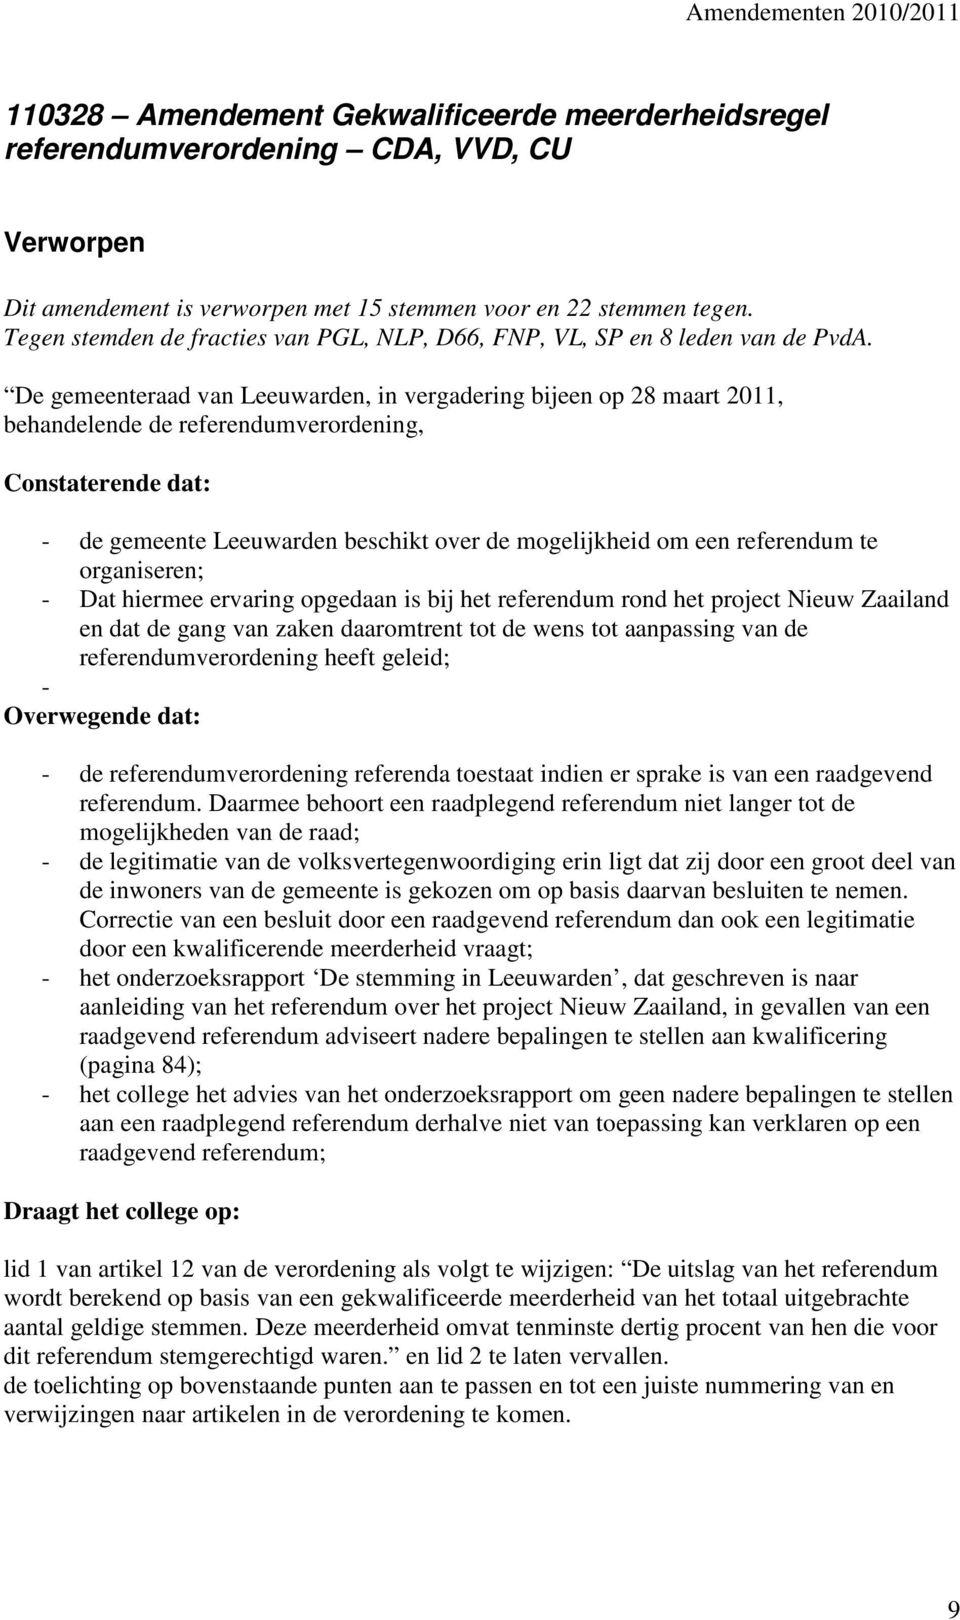 De gemeenteraad van Leeuwarden, in vergadering bijeen op 28 maart 2011, behandelende de referendumverordening, Constaterende dat: - de gemeente Leeuwarden beschikt over de mogelijkheid om een